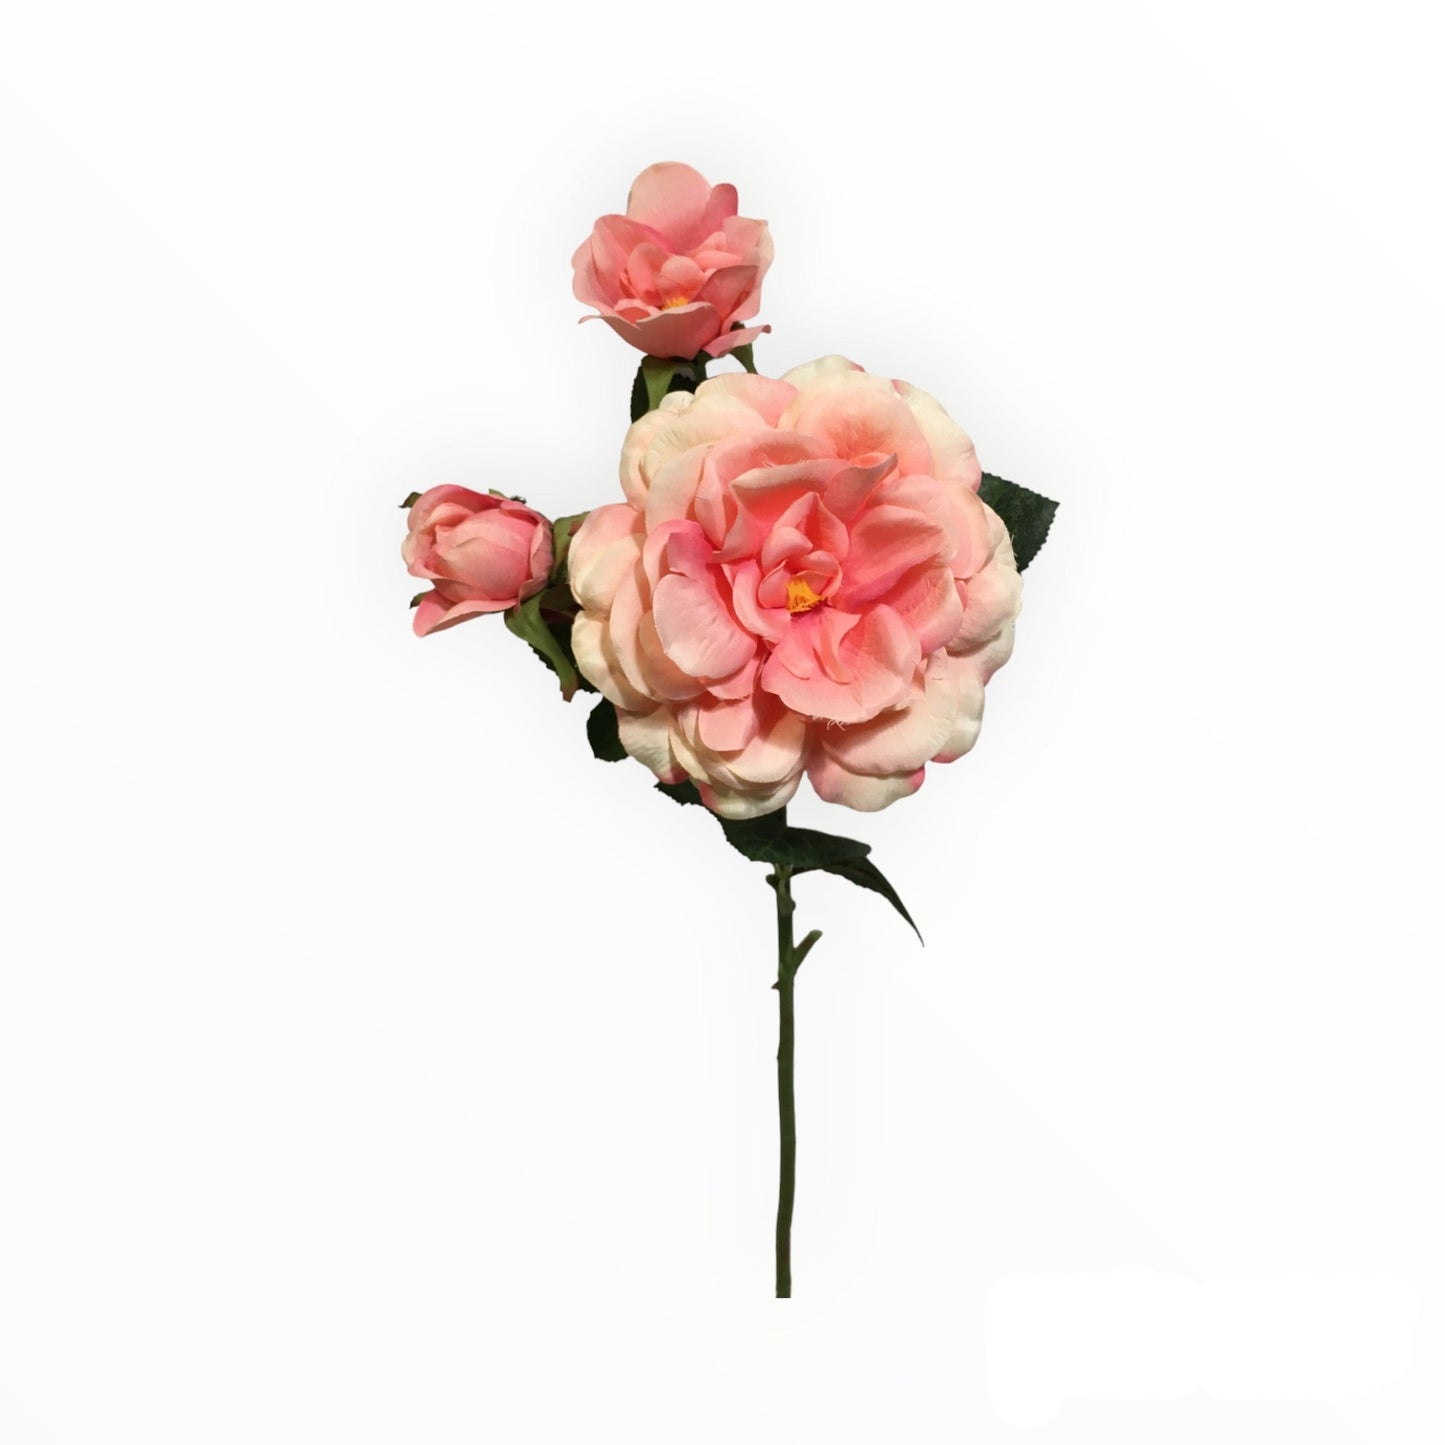 Rametto artificiale con 3 rose color rosa. Dimensione: altezza cm 70. In negozio e online su tuttochic.it